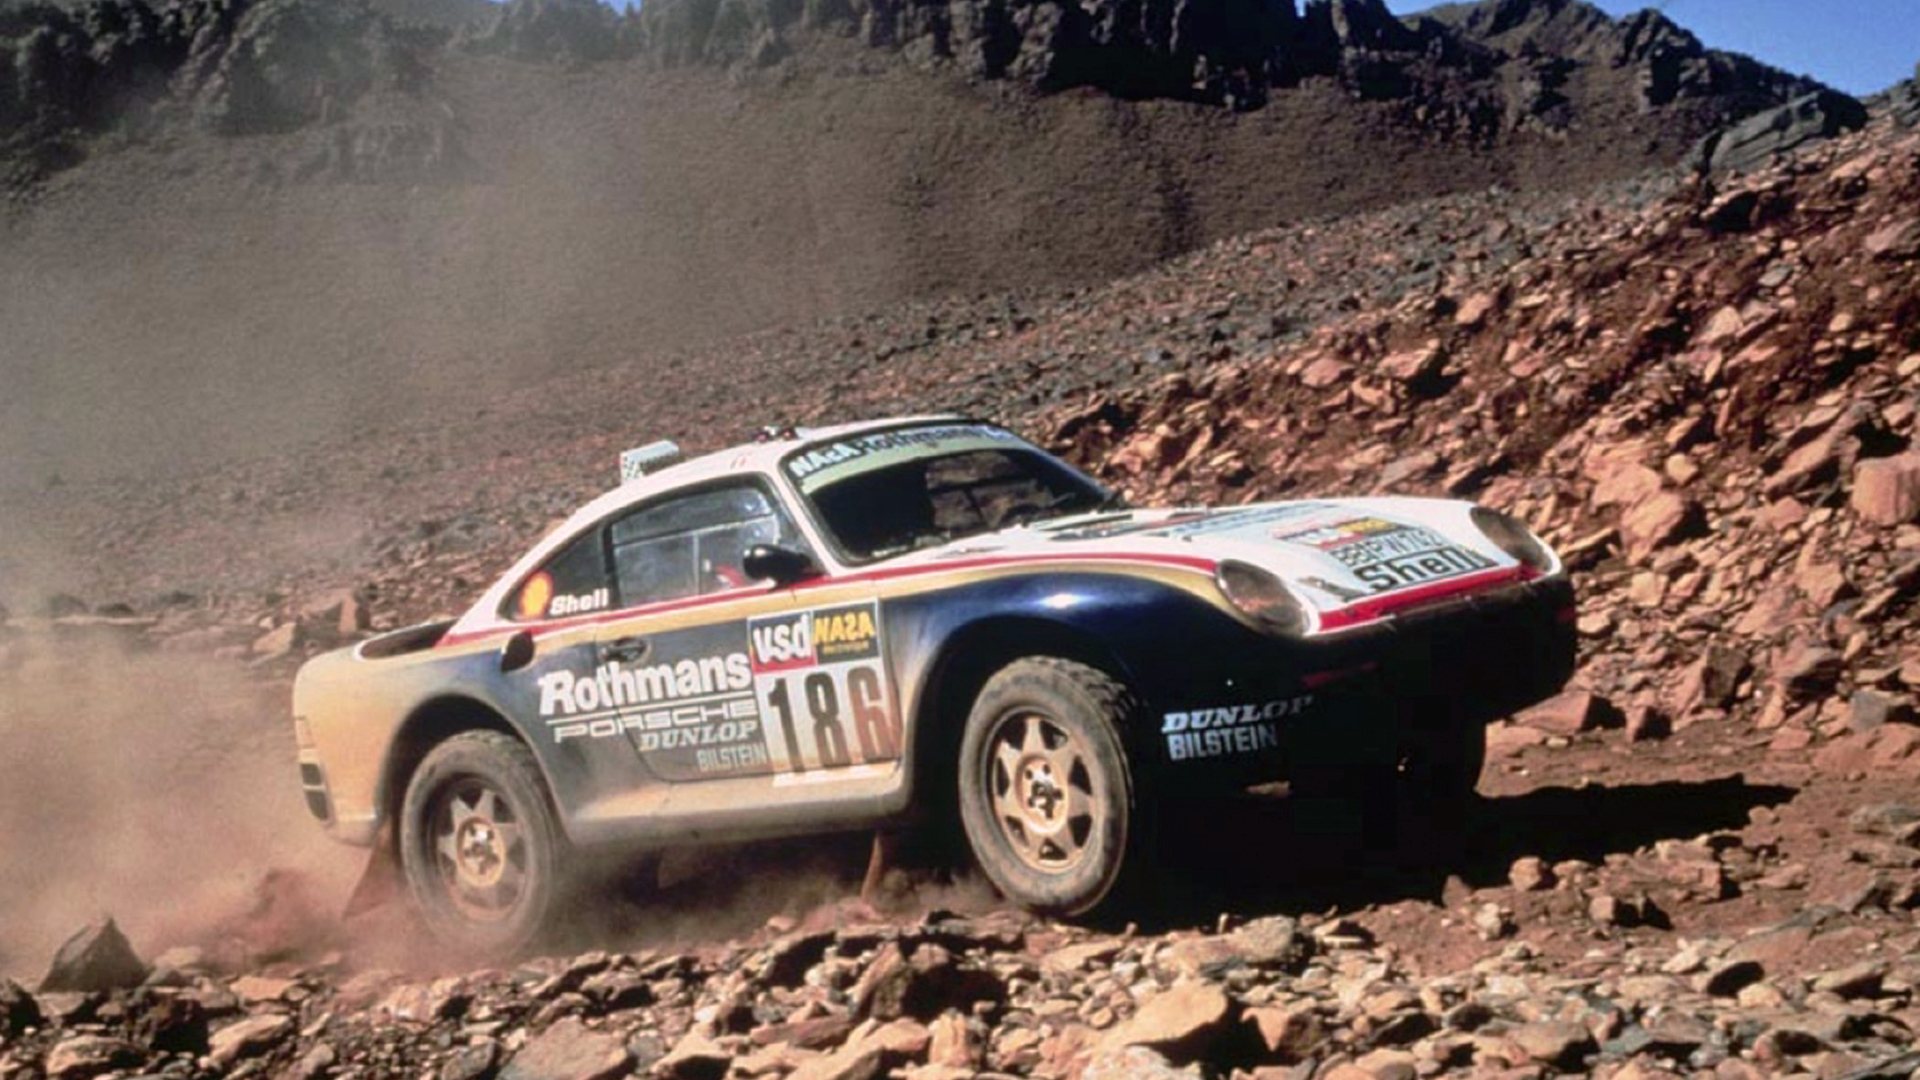 El Porsche 959 fue el primer prototipo desarrollado para el Dakar en 1985. Ganó la edición del 86 y le abrió la puerta a todas las fábricas de autos para tomar el Dakar como un desafío tecnológico